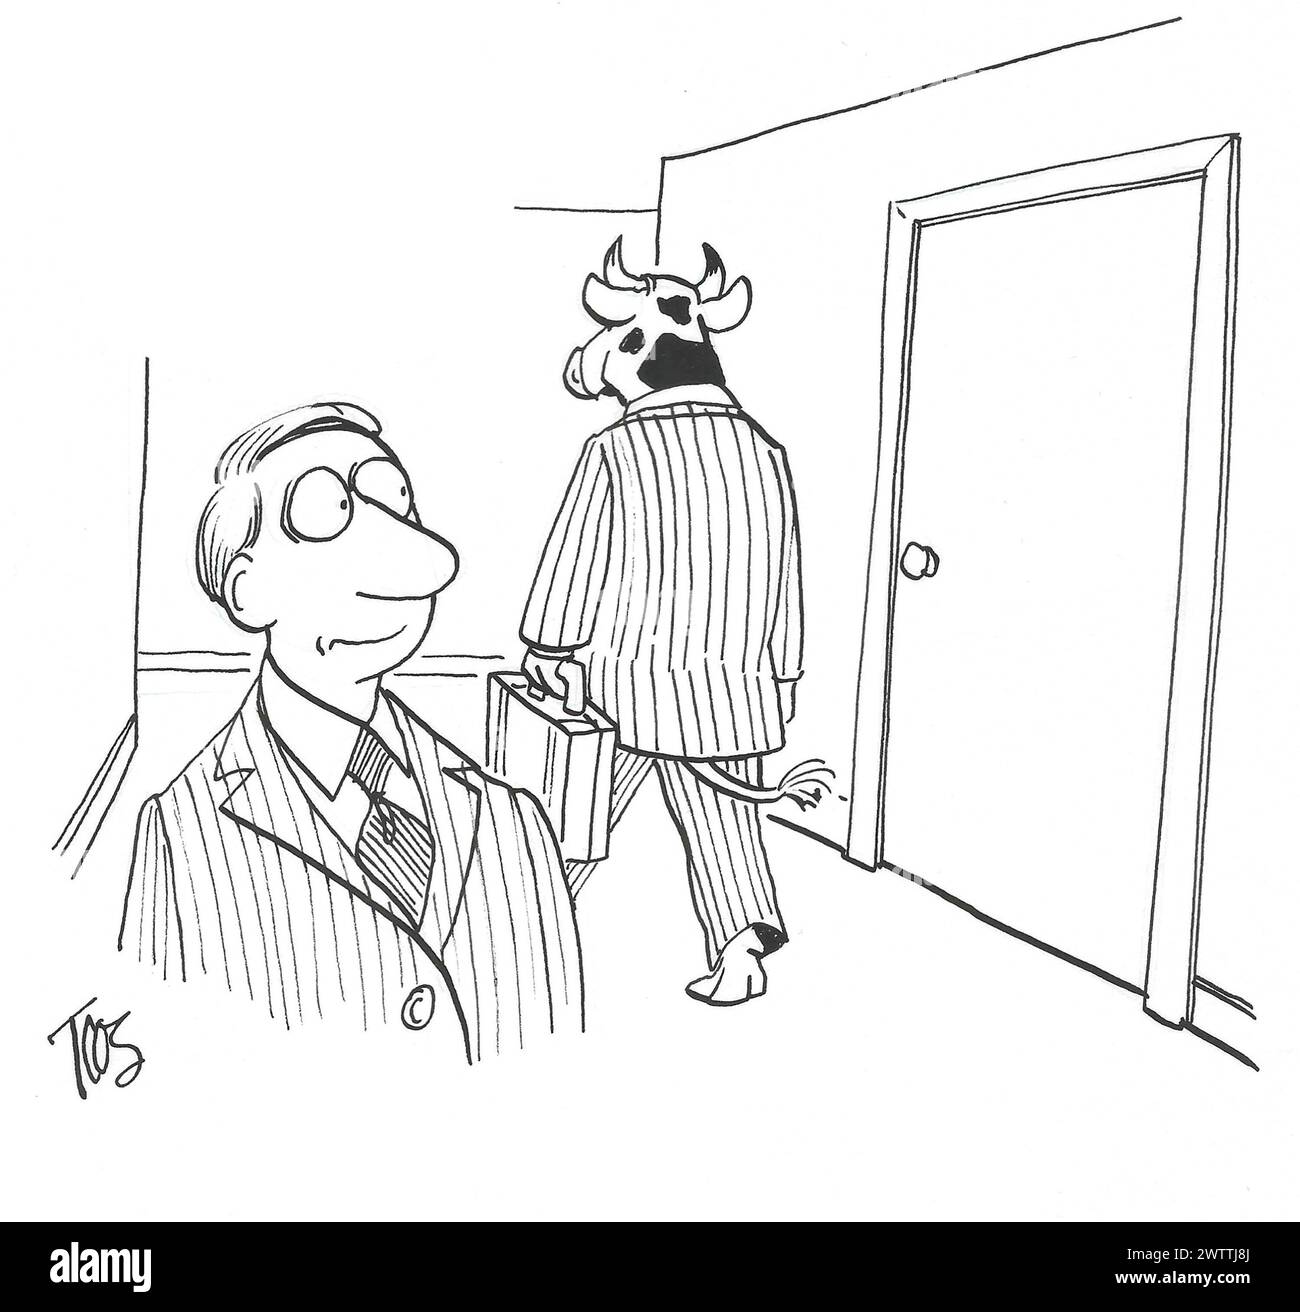 BW-Cartoon eines Geschäftsmannes, der einen zweiten Blick auf seinen selbstbewussten, bulligen Kollegen wirft. Stockfoto